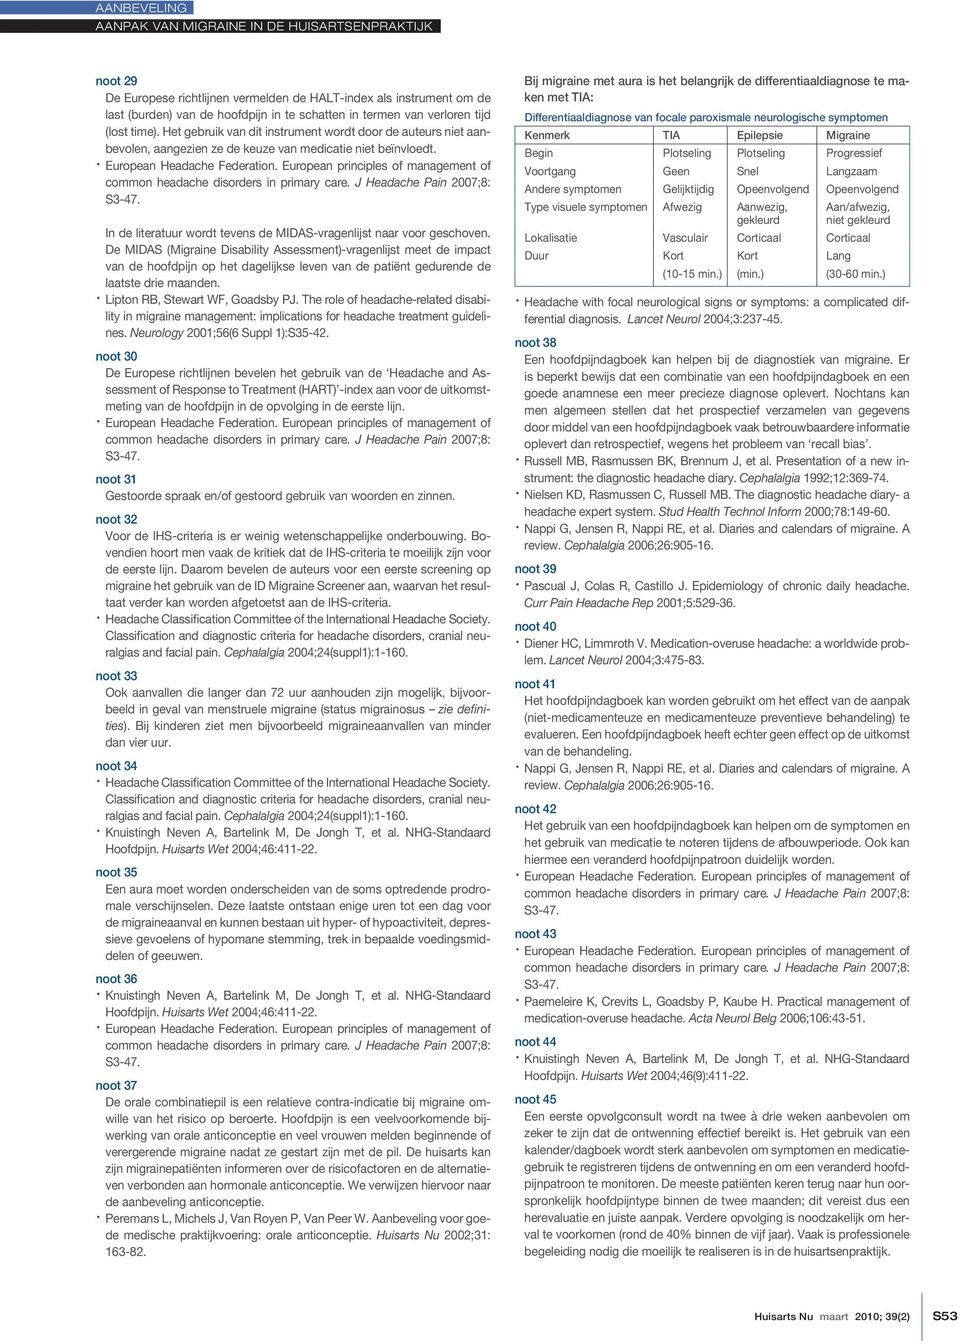 European principles of management of common headache disorders in primary care. J Headache Pain 2007;8: S3-47. In de literatuur wordt tevens de MIDAS-vragenlijst naar voor geschoven.